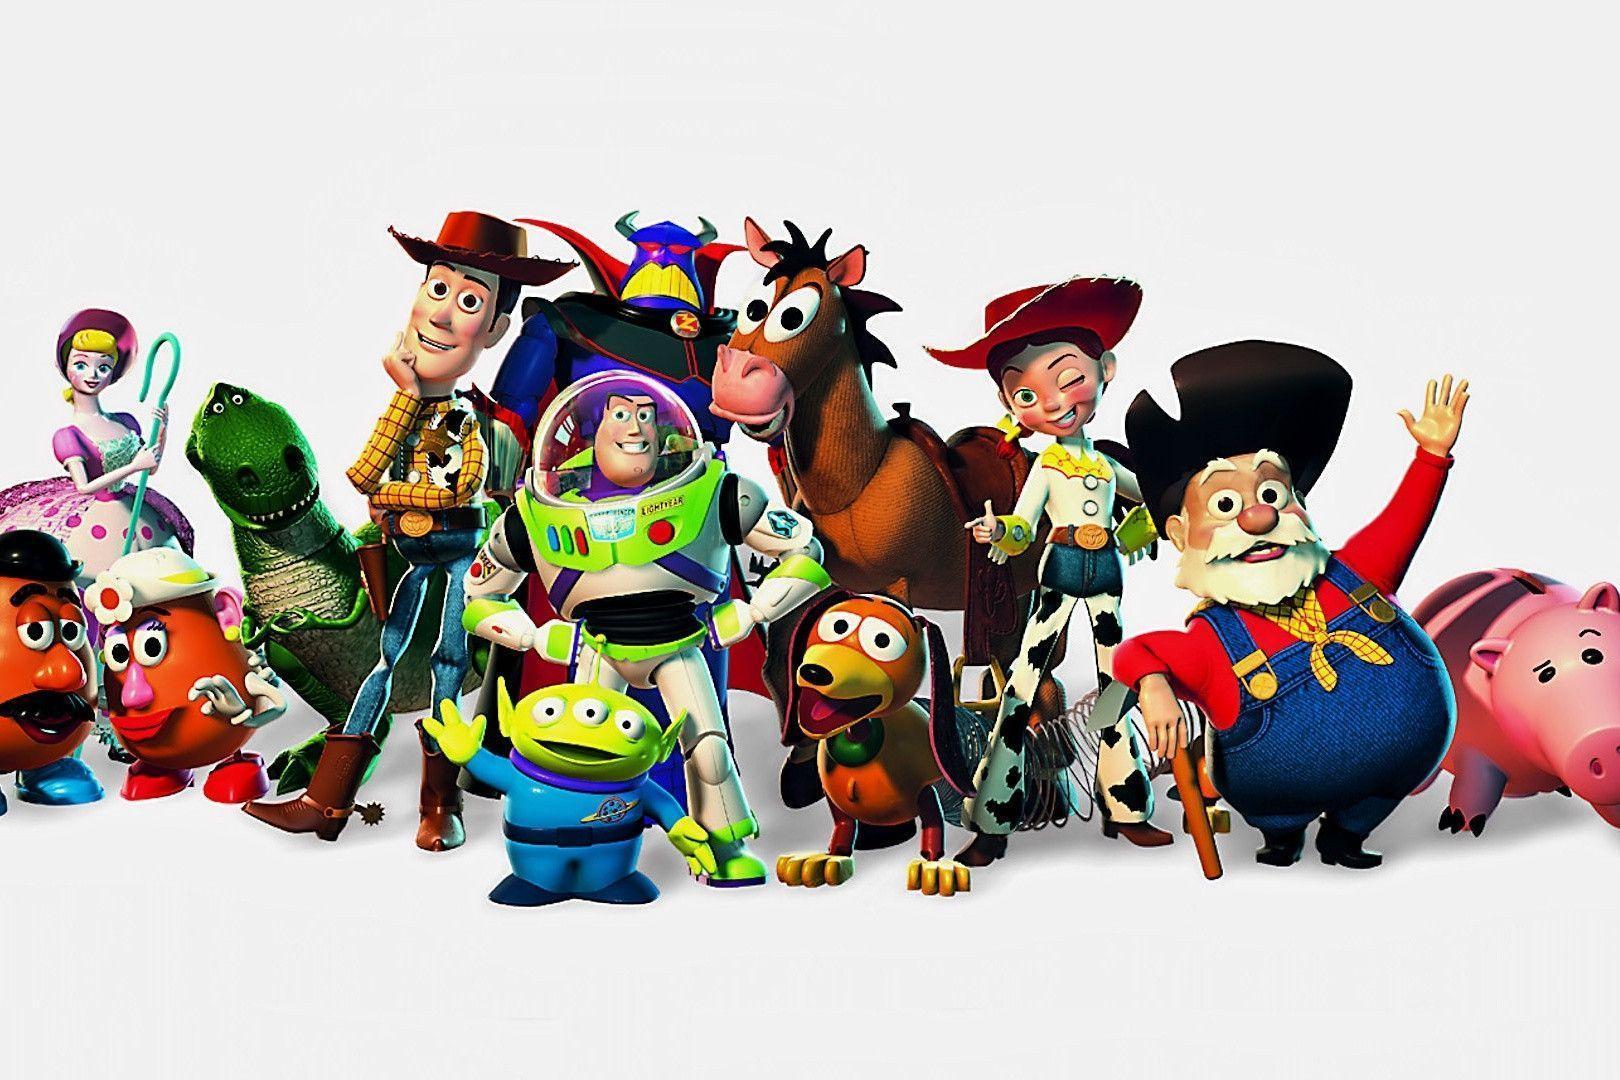 Download 21 pixar-wallpaper-iphone Pixar-Wallpaper-iPhone-by-WillZMarler-on-DeviantArt.jpg